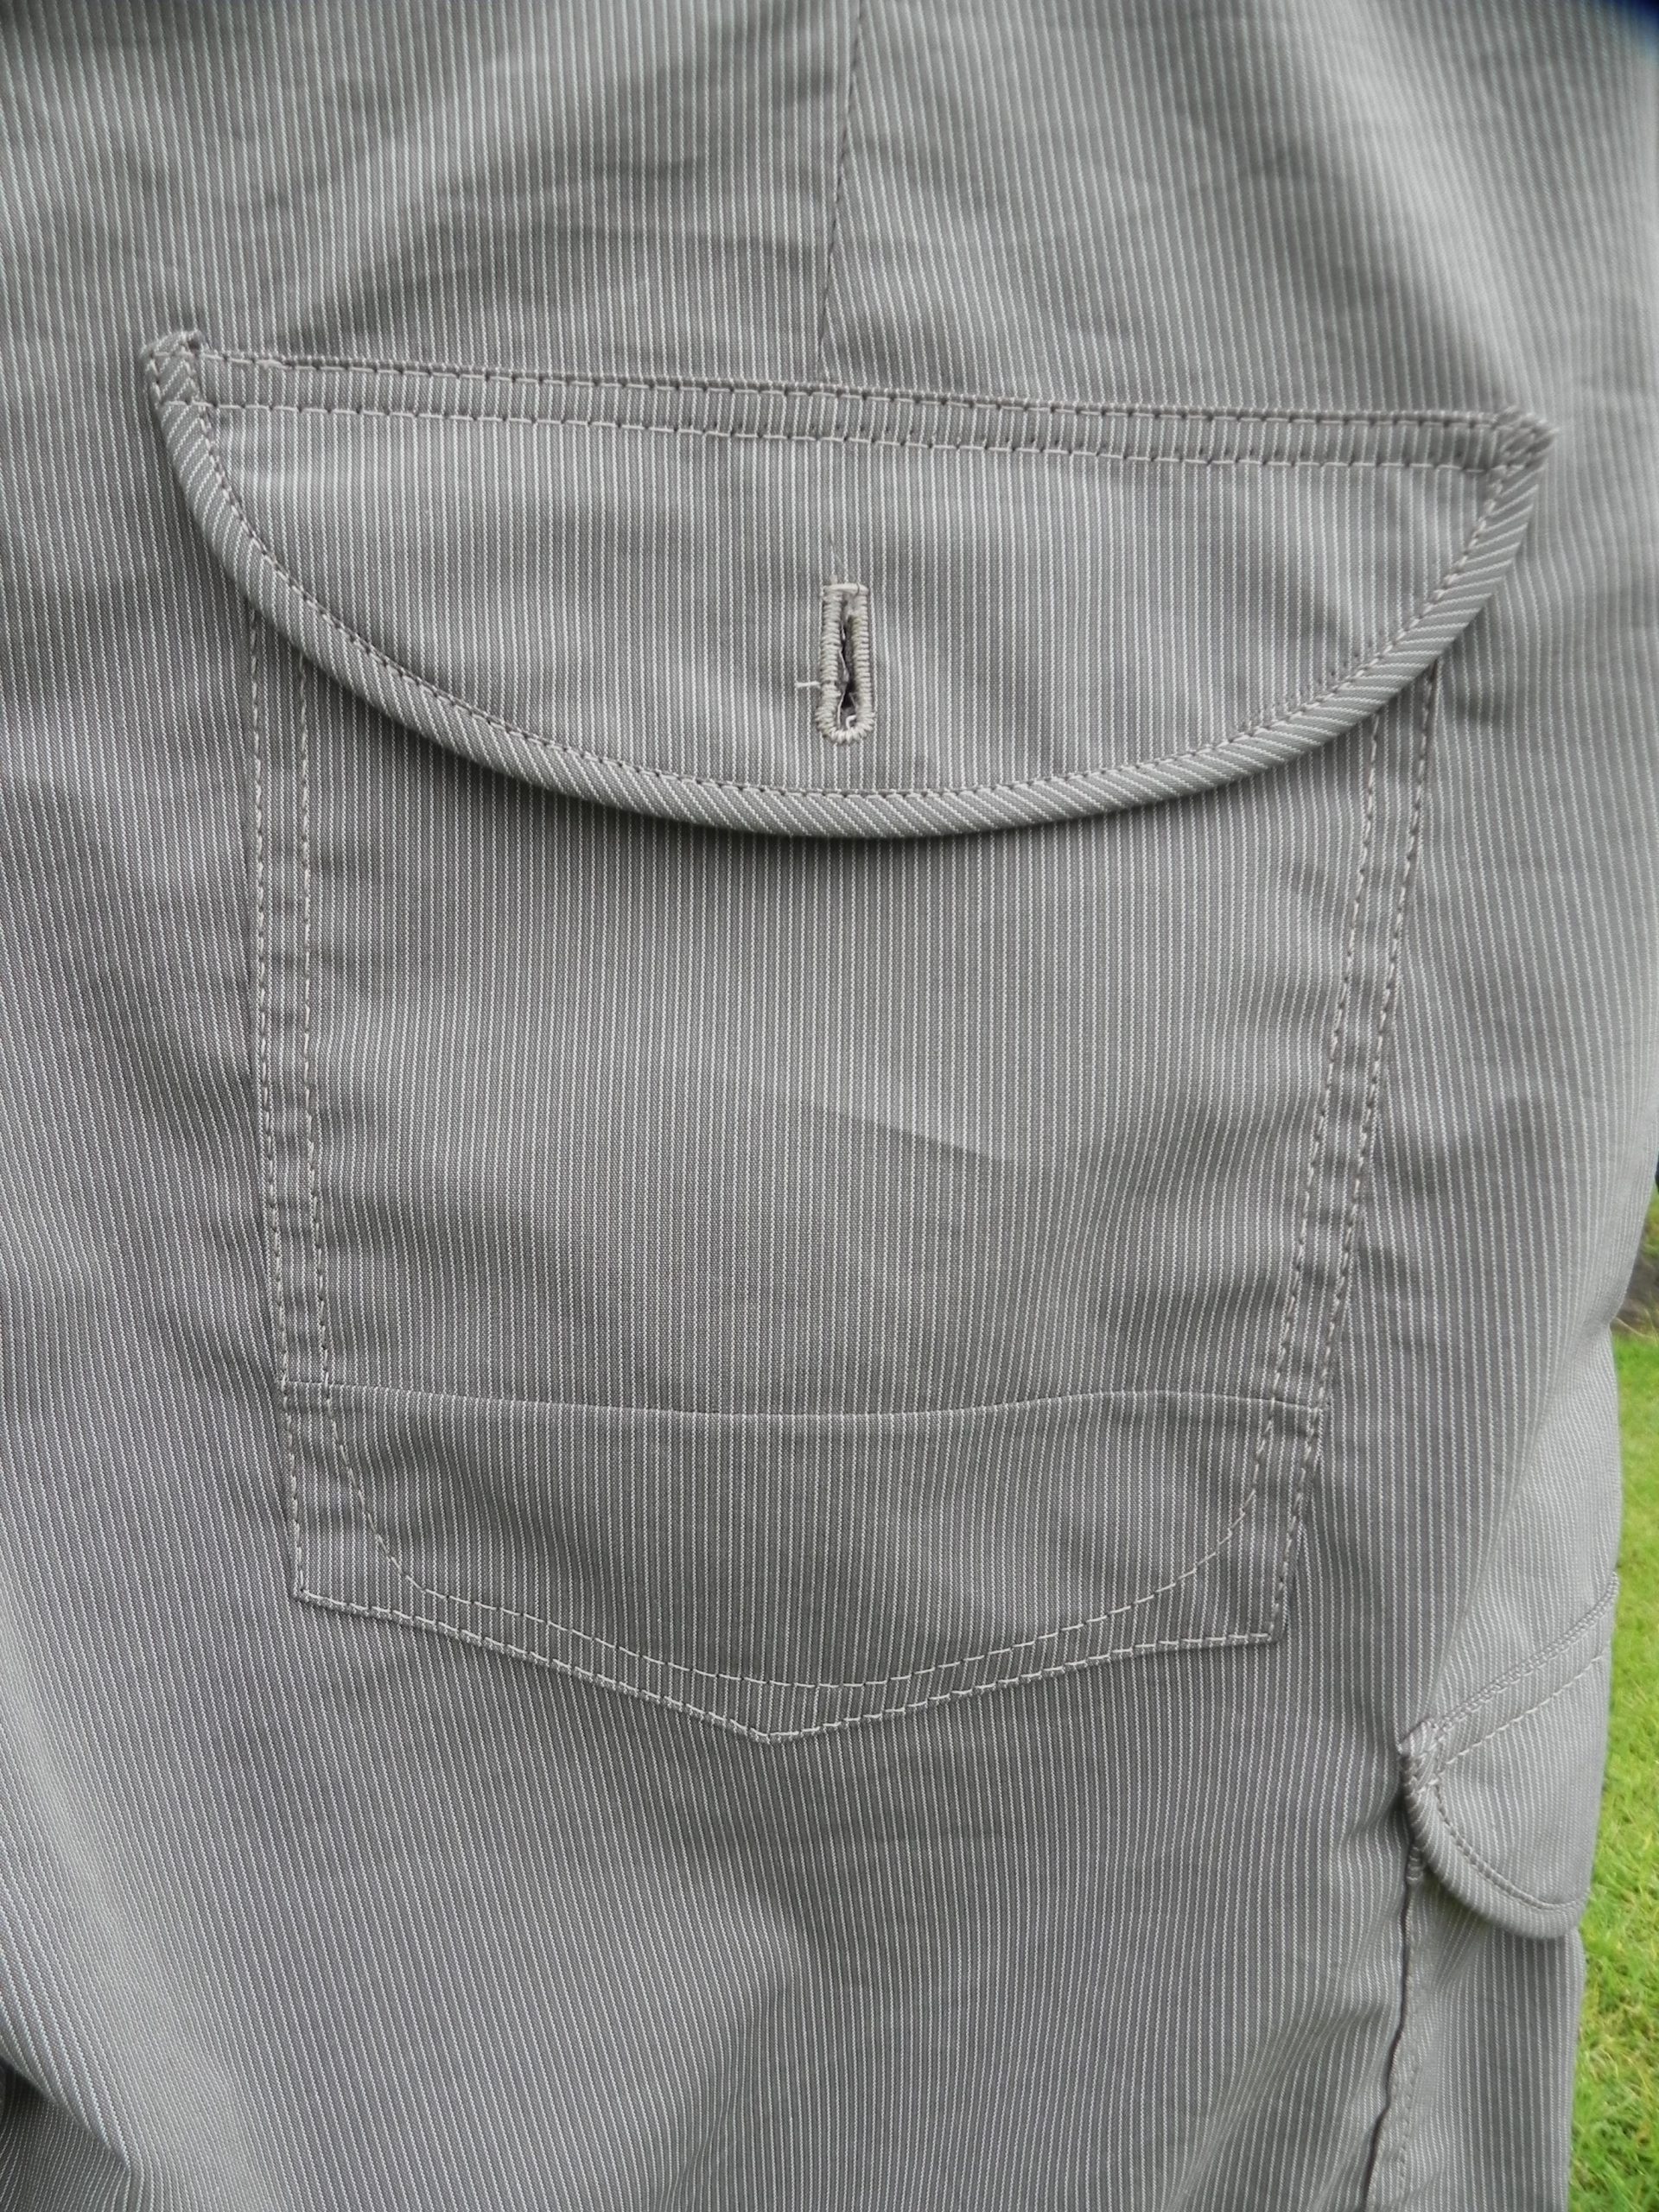 Smalle kantvoet #10 geeft nauwkeurig sierstiksel Bernina voor jeanspocket